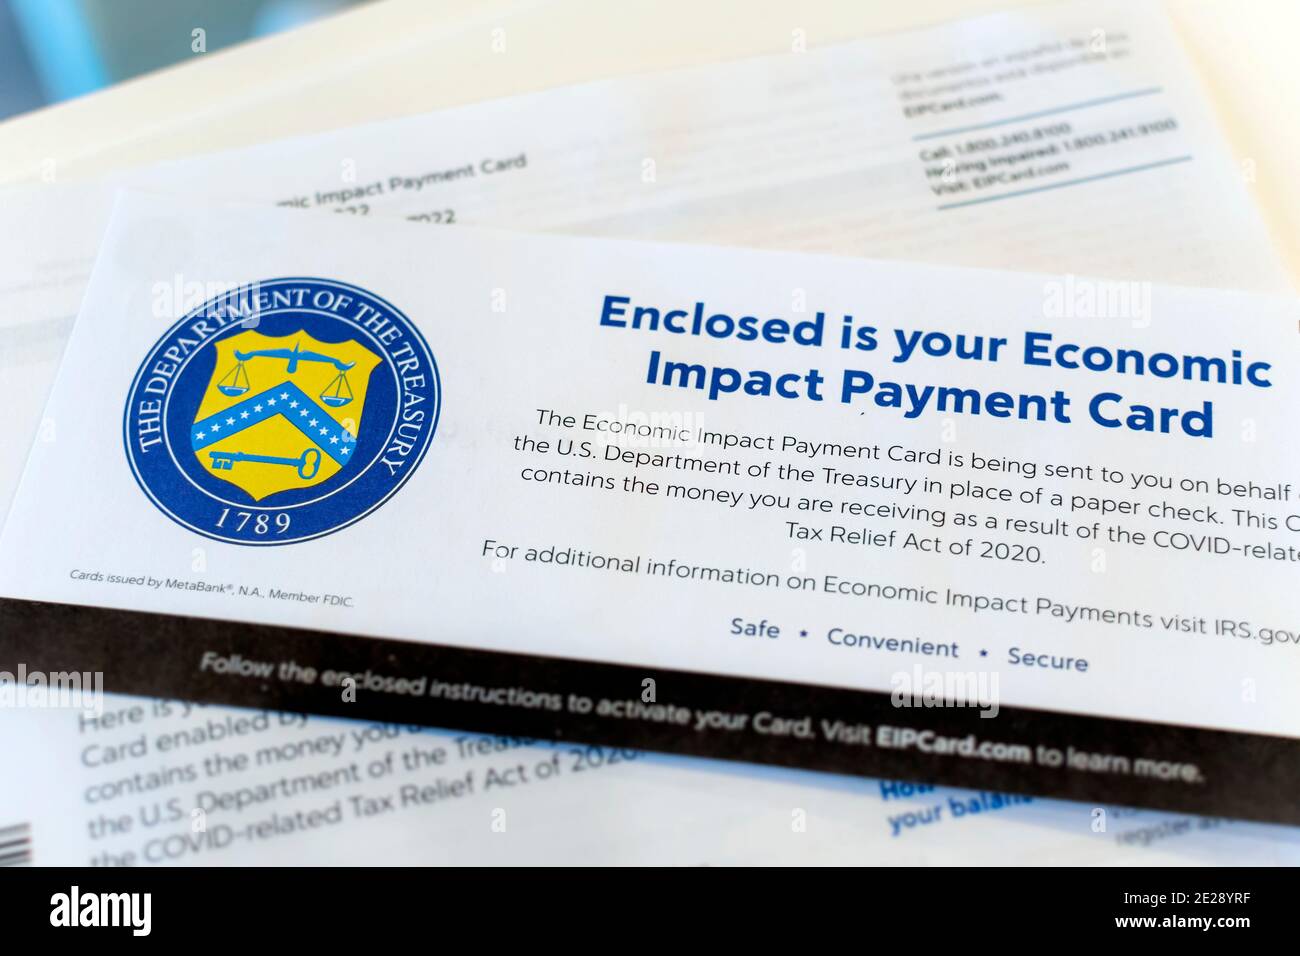 Nahaufnahme des Briefes des US-Finanzministeriums, der die Economic Impact Payment Card aufgrund der COVID-19-Pandemie begleitet. Stockfoto